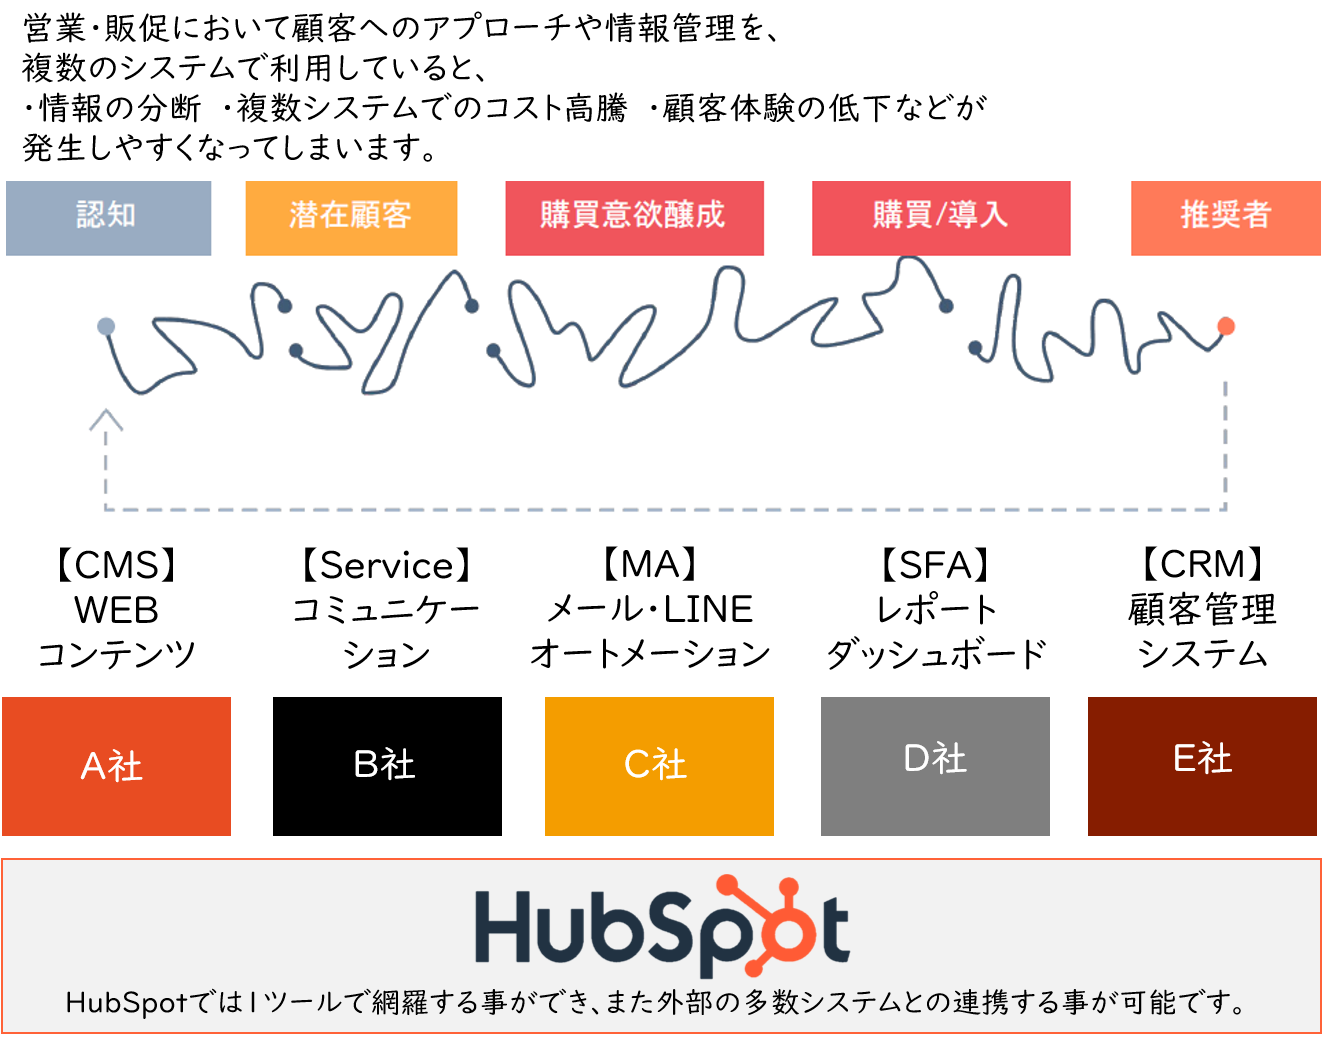 [hubspot]1ツールで完結2